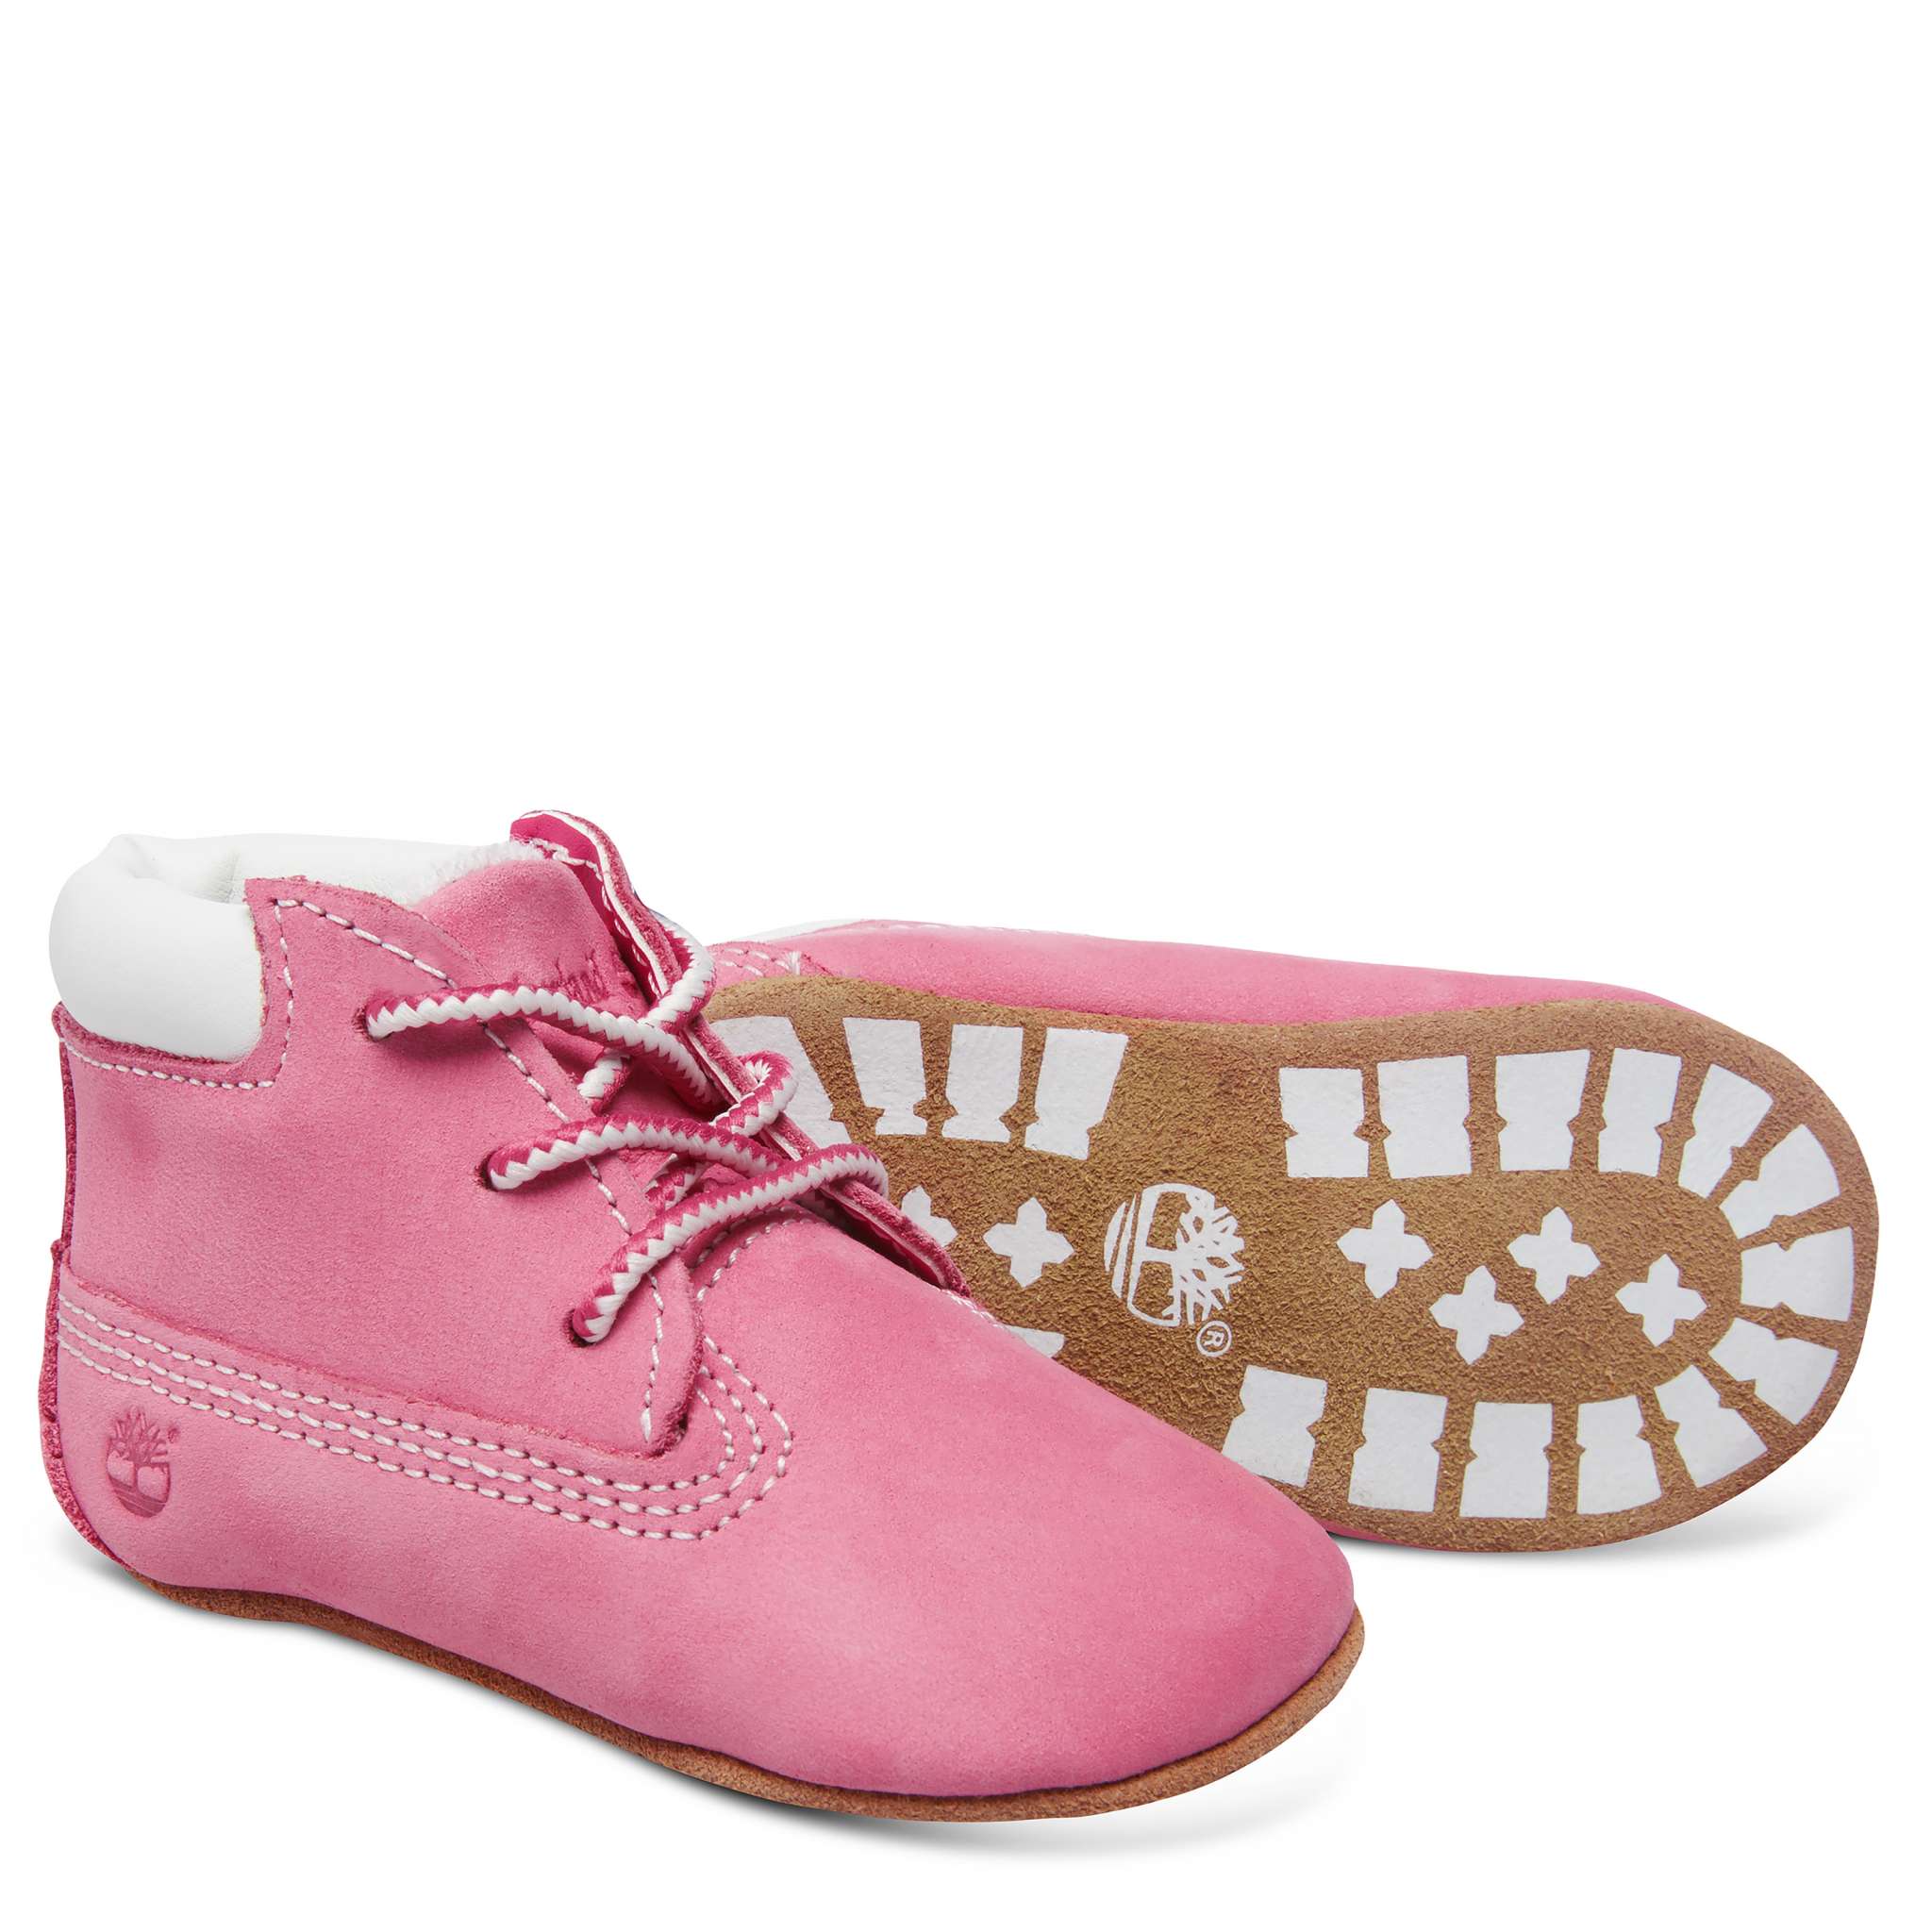 Timberland babysett med sko og lue, rosa